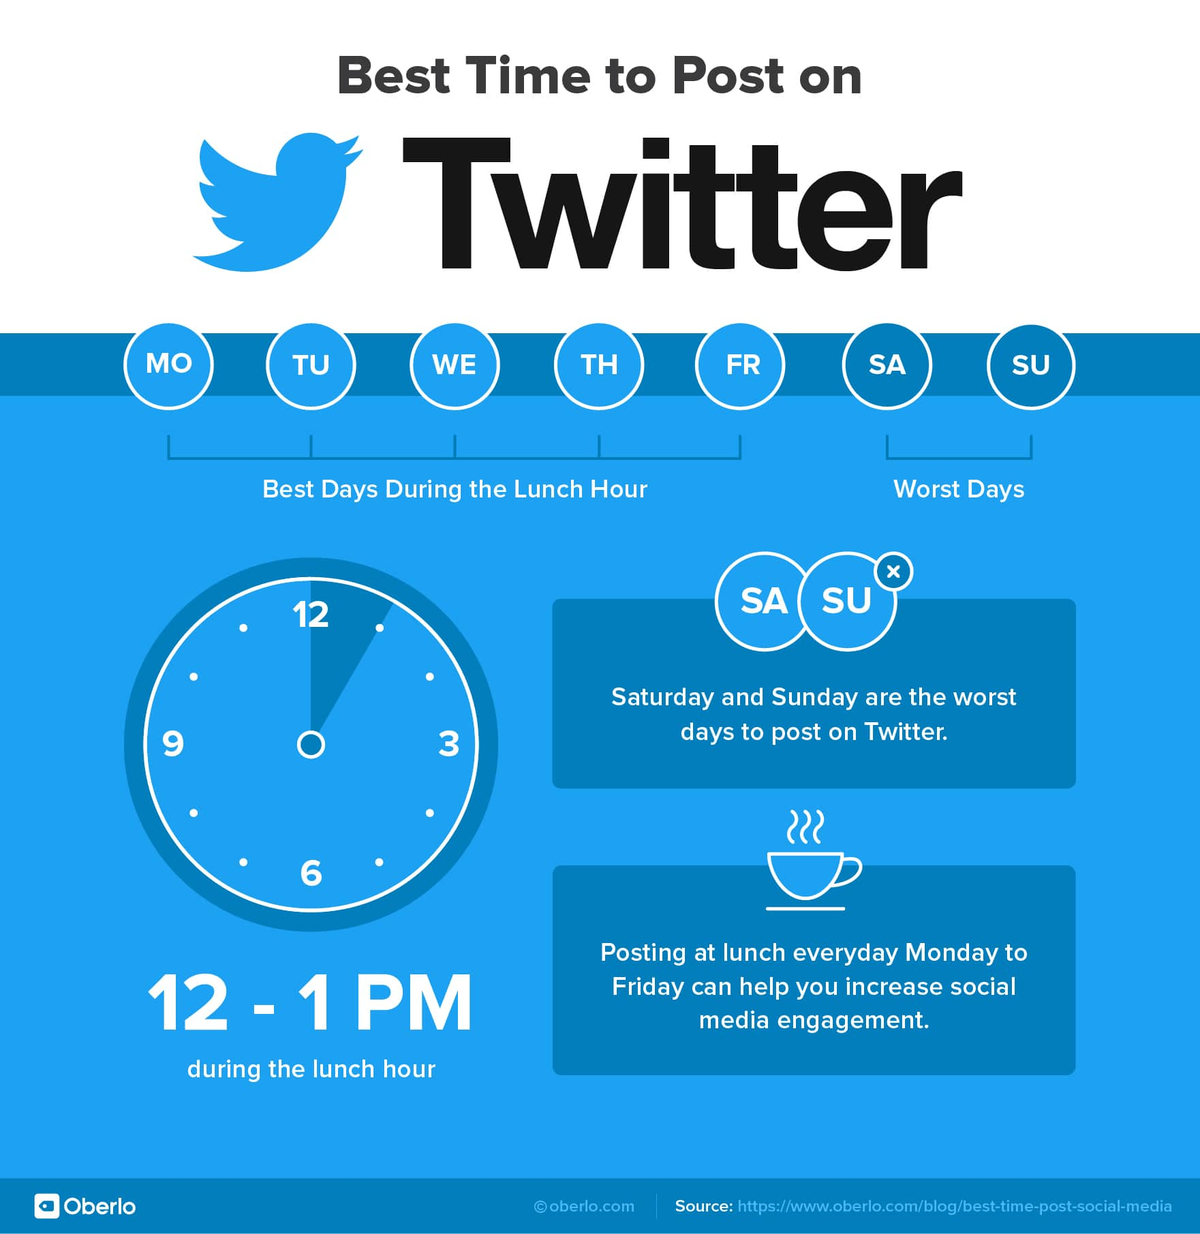 הזמן הטוב ביותר לפרסם בטוויטר